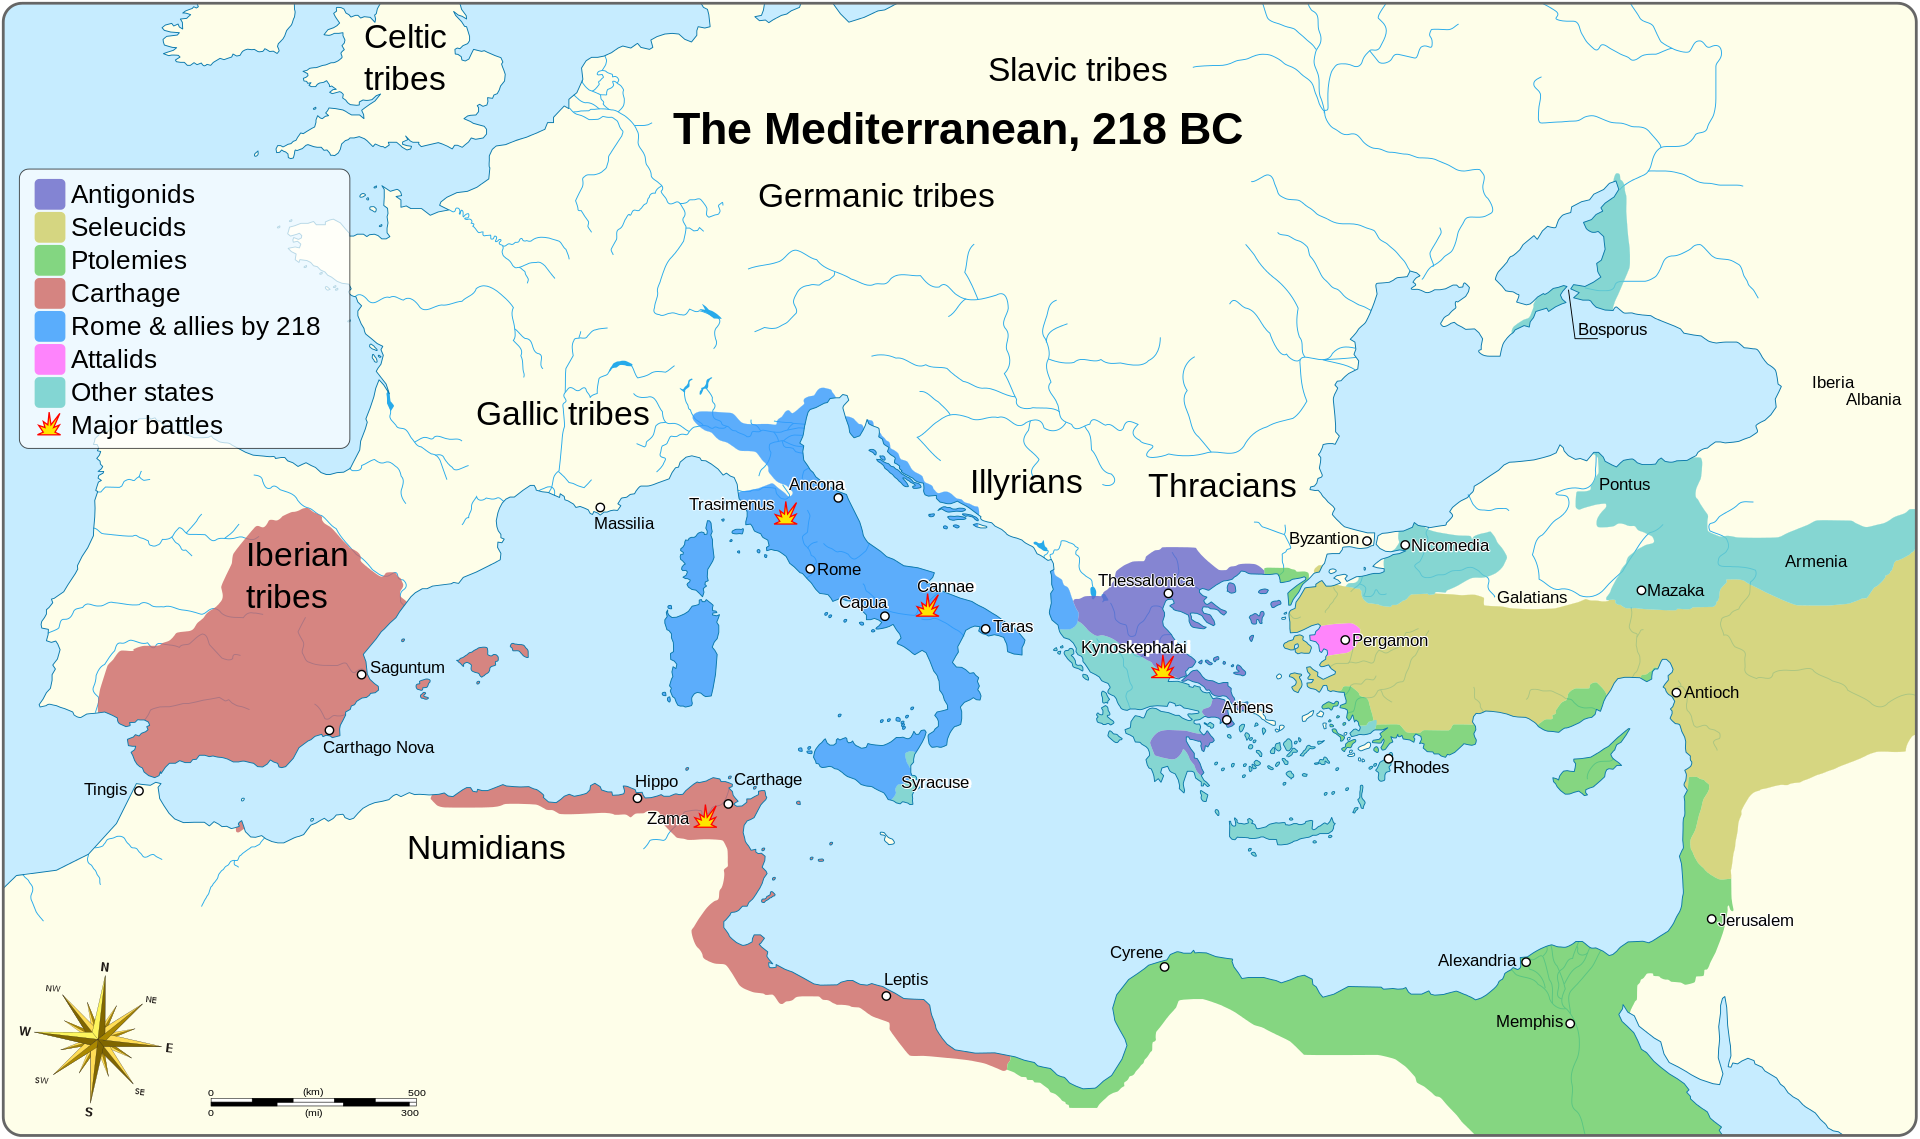 The Mediterranean in 218 BC